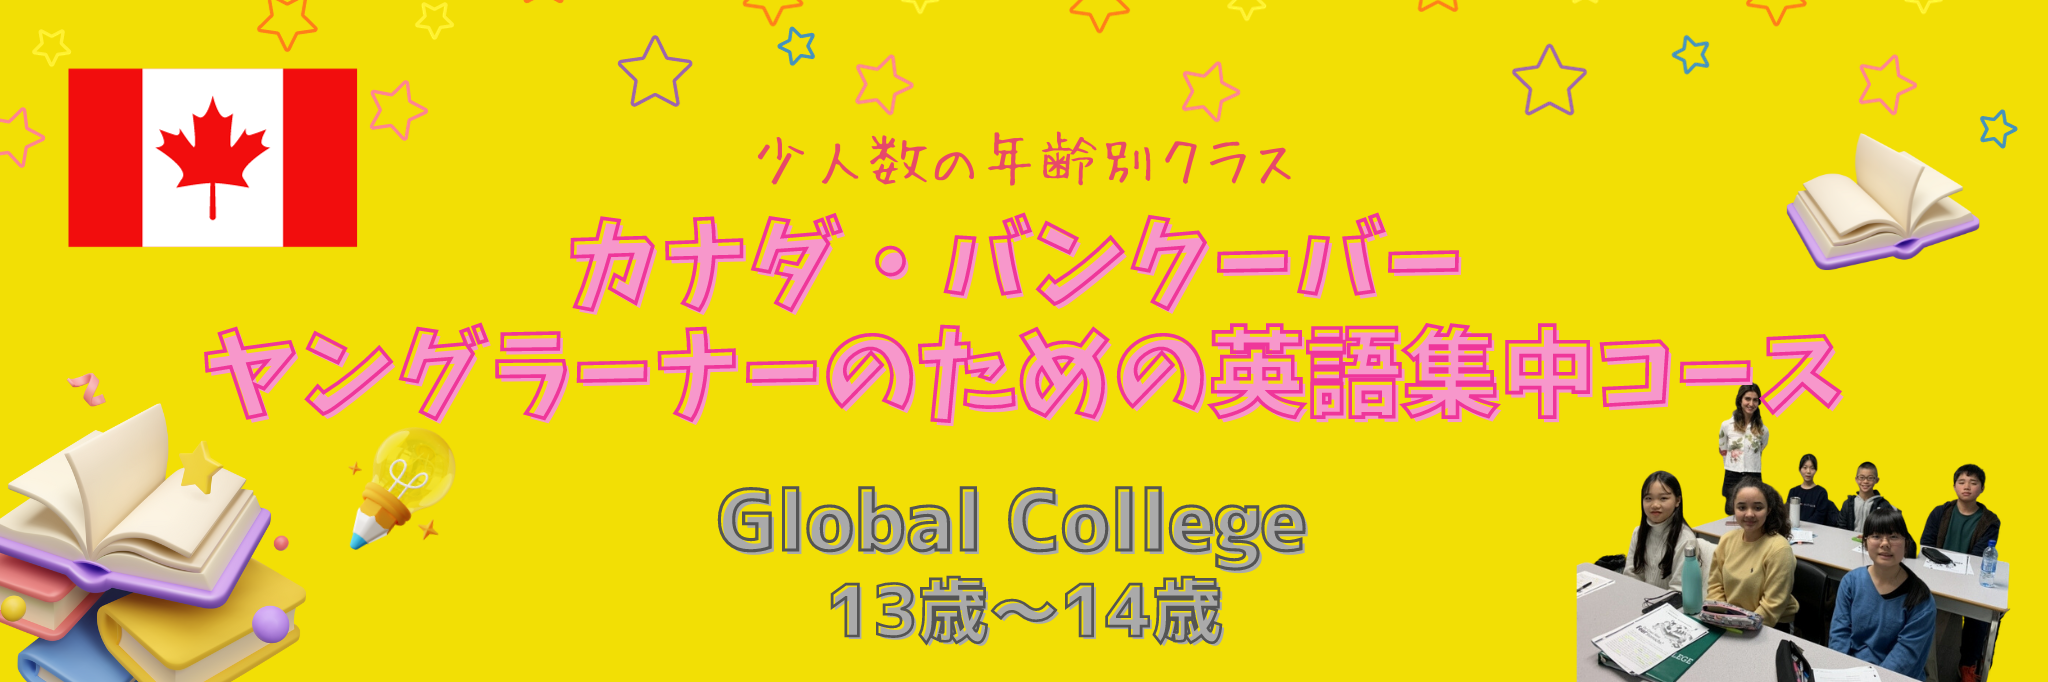 Global College ヤングラーナーのための英語集中コース